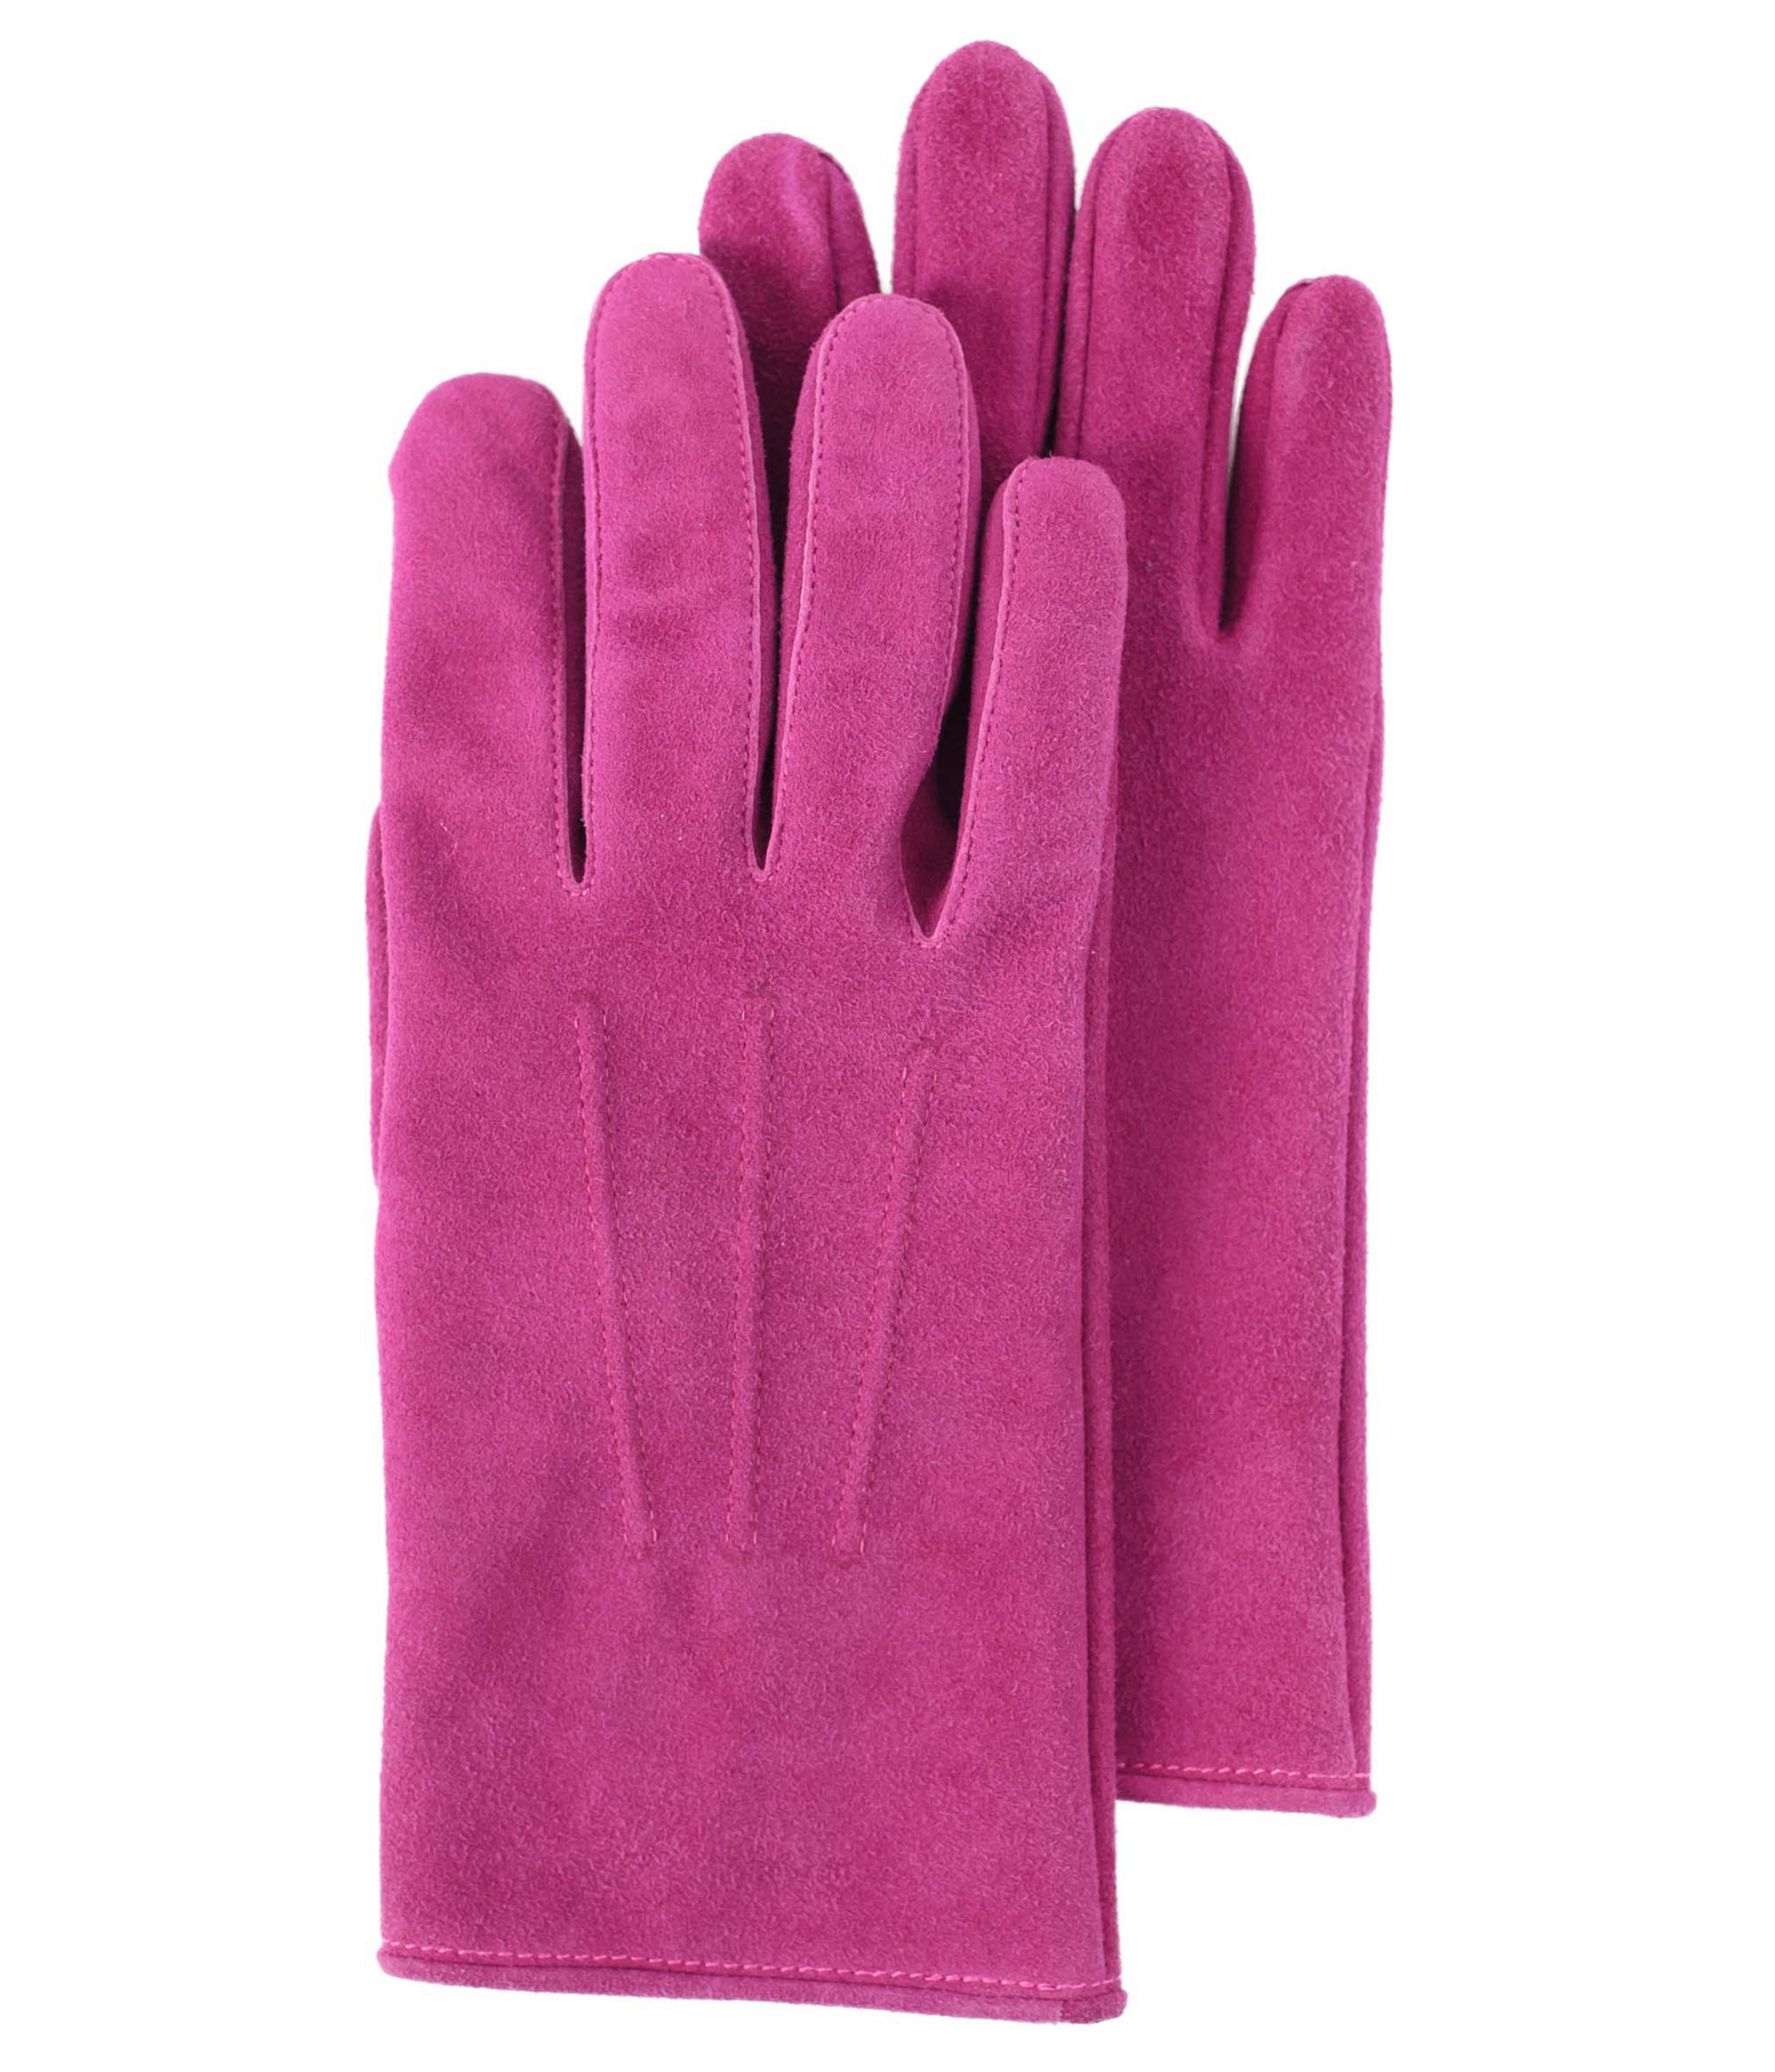 Фиолетовые перчатки из замши Hender Scheme LI-RC-GLV/prp, размер S